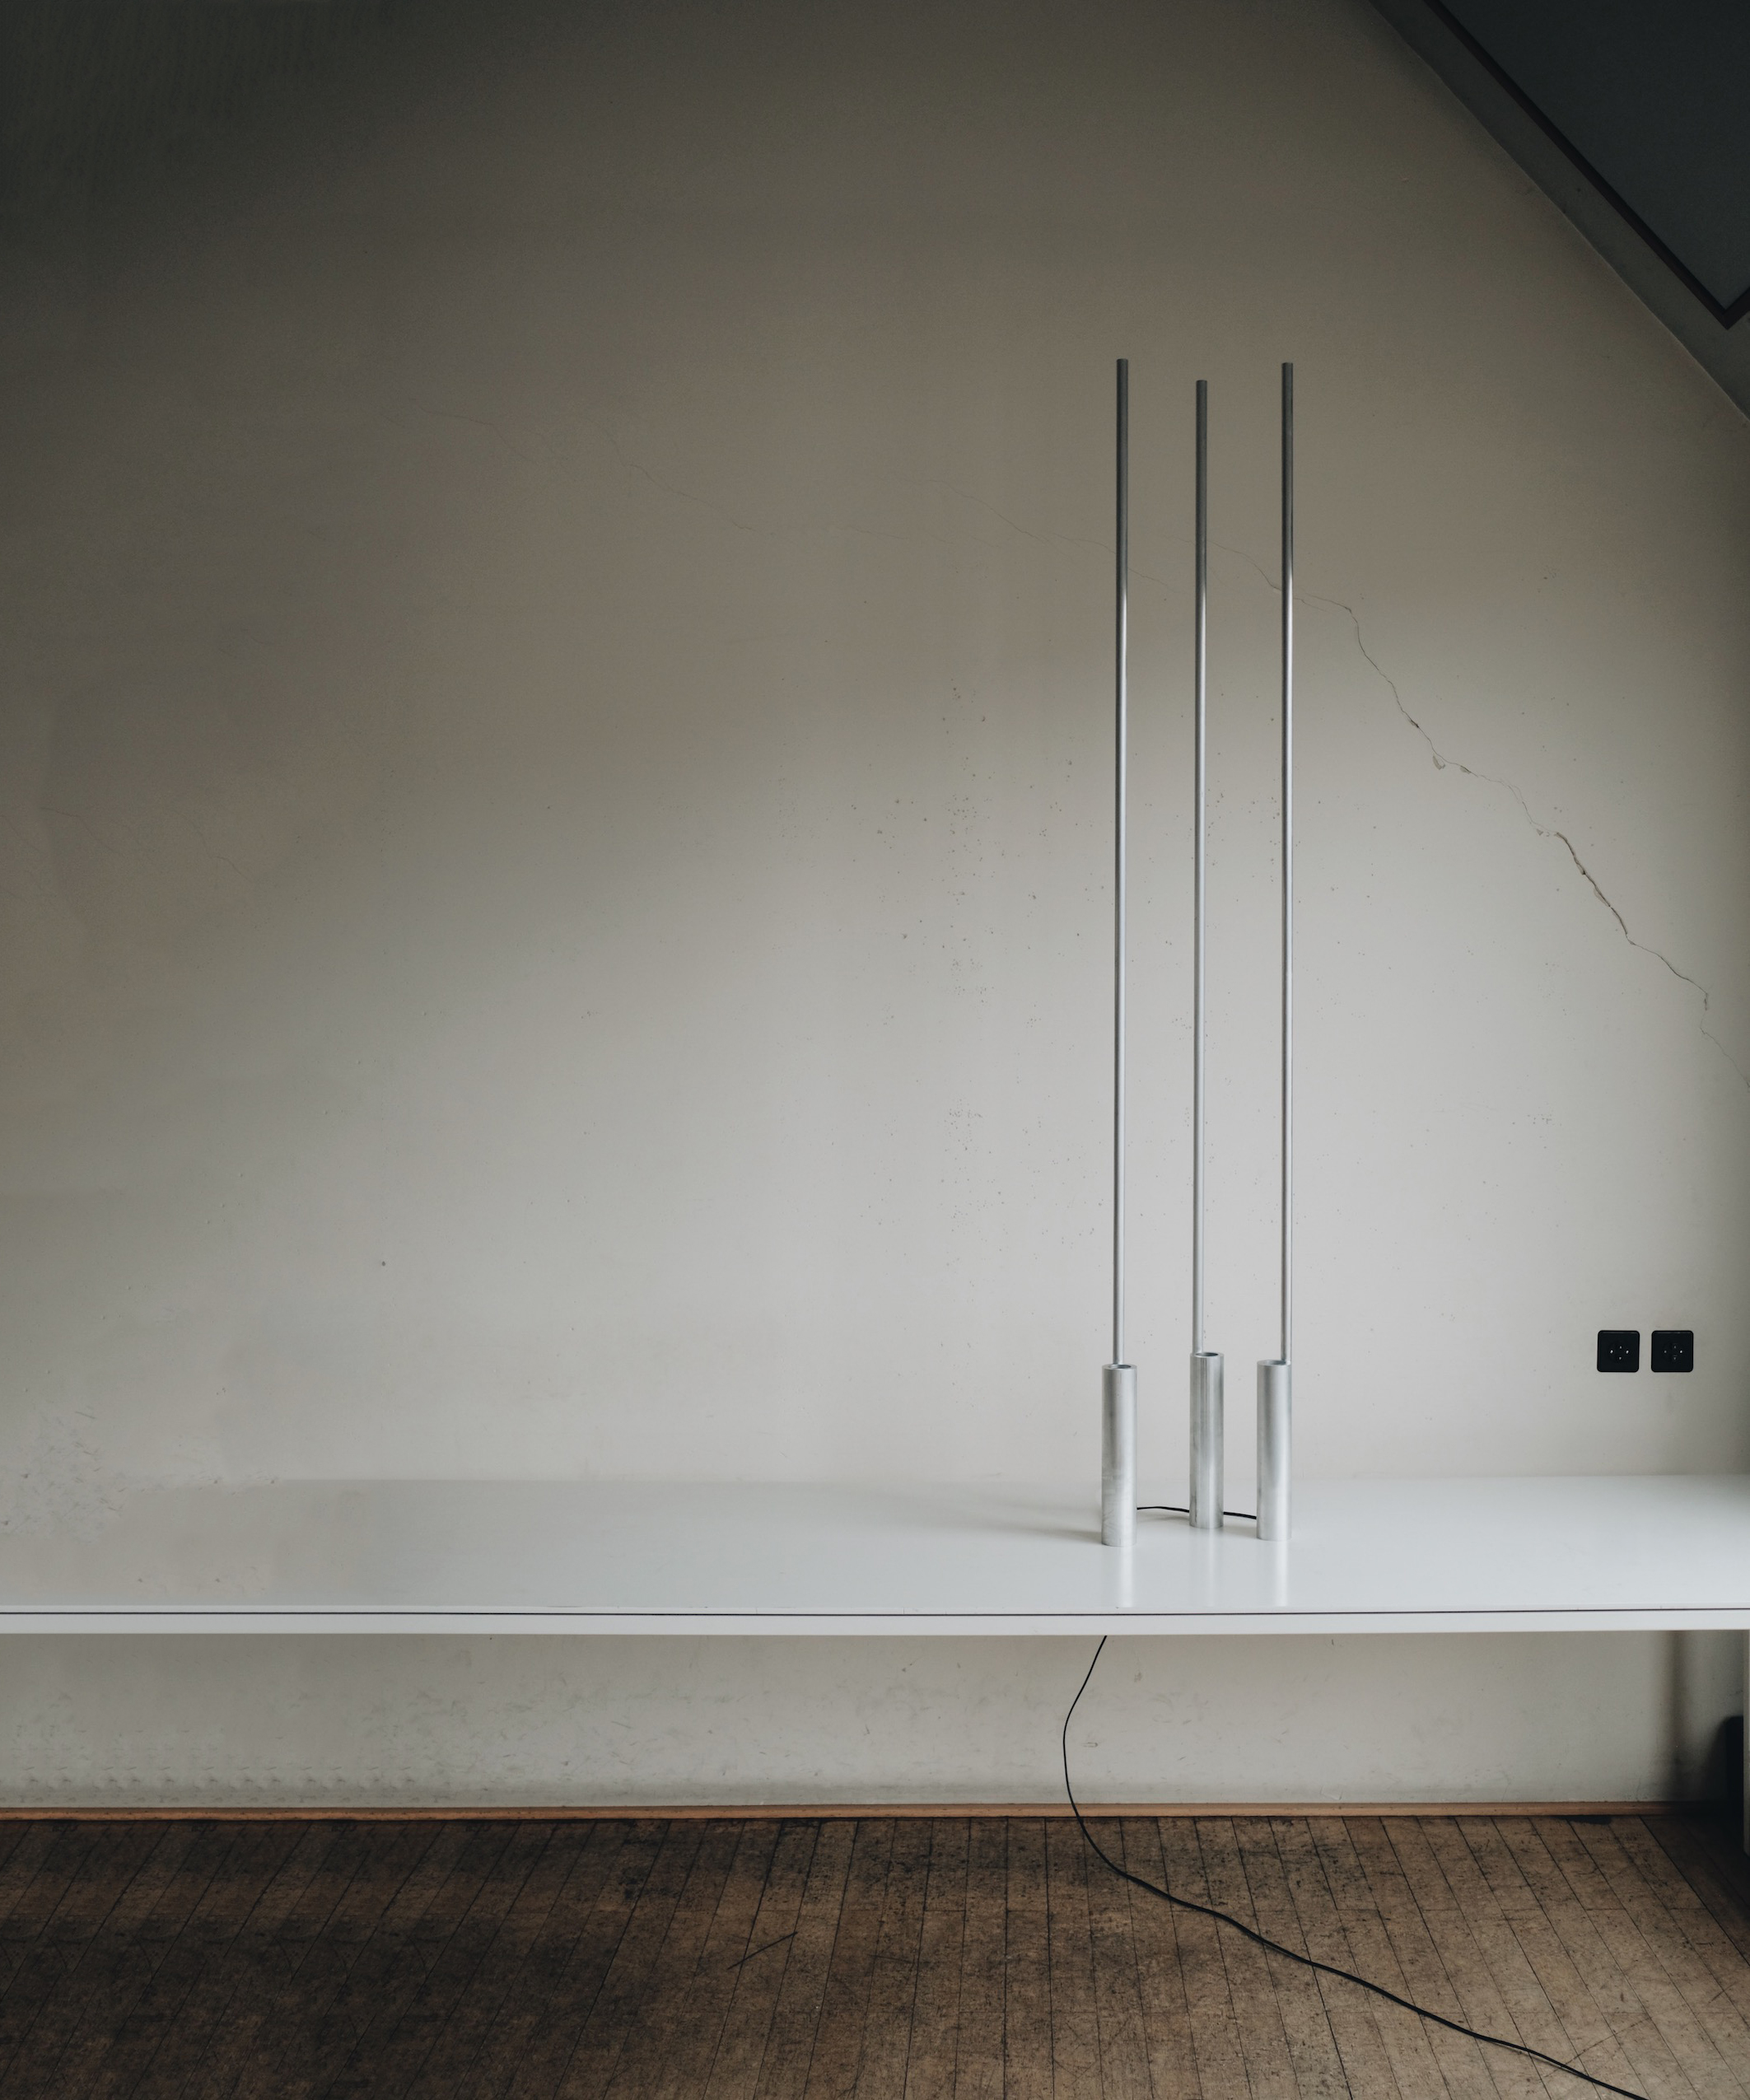 Minimalist Floor Lamp "Altitude" by Raphael Kadid